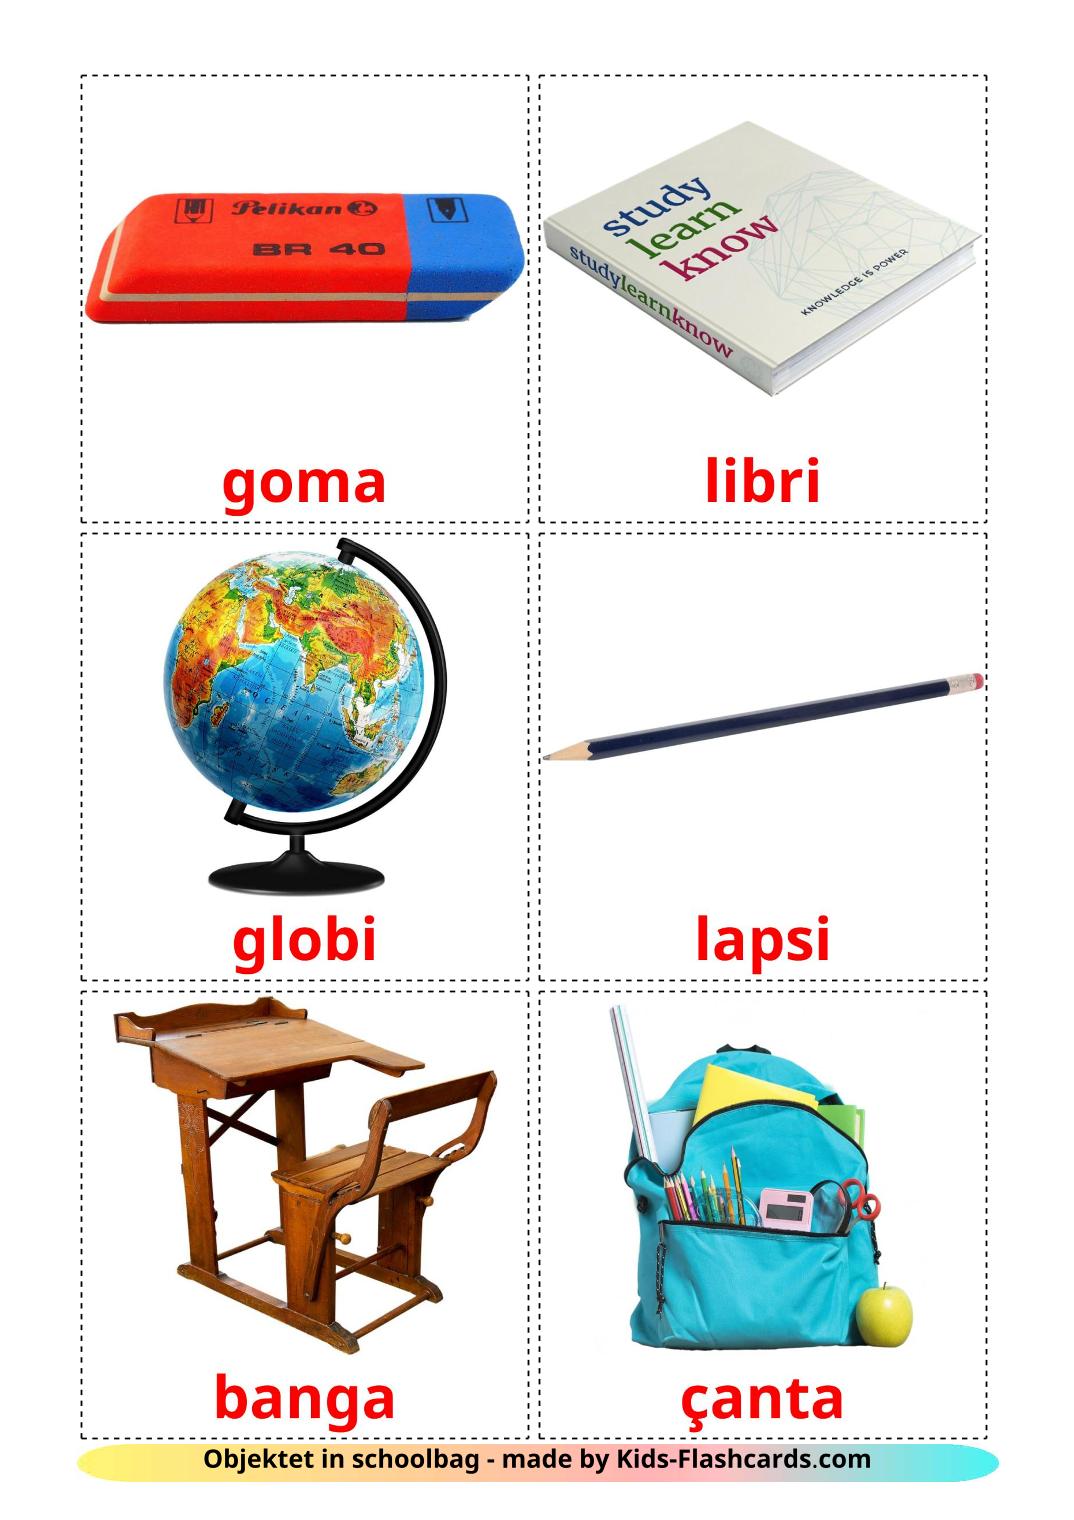 Objetos de sala de aula - 36 Flashcards albanêses gratuitos para impressão